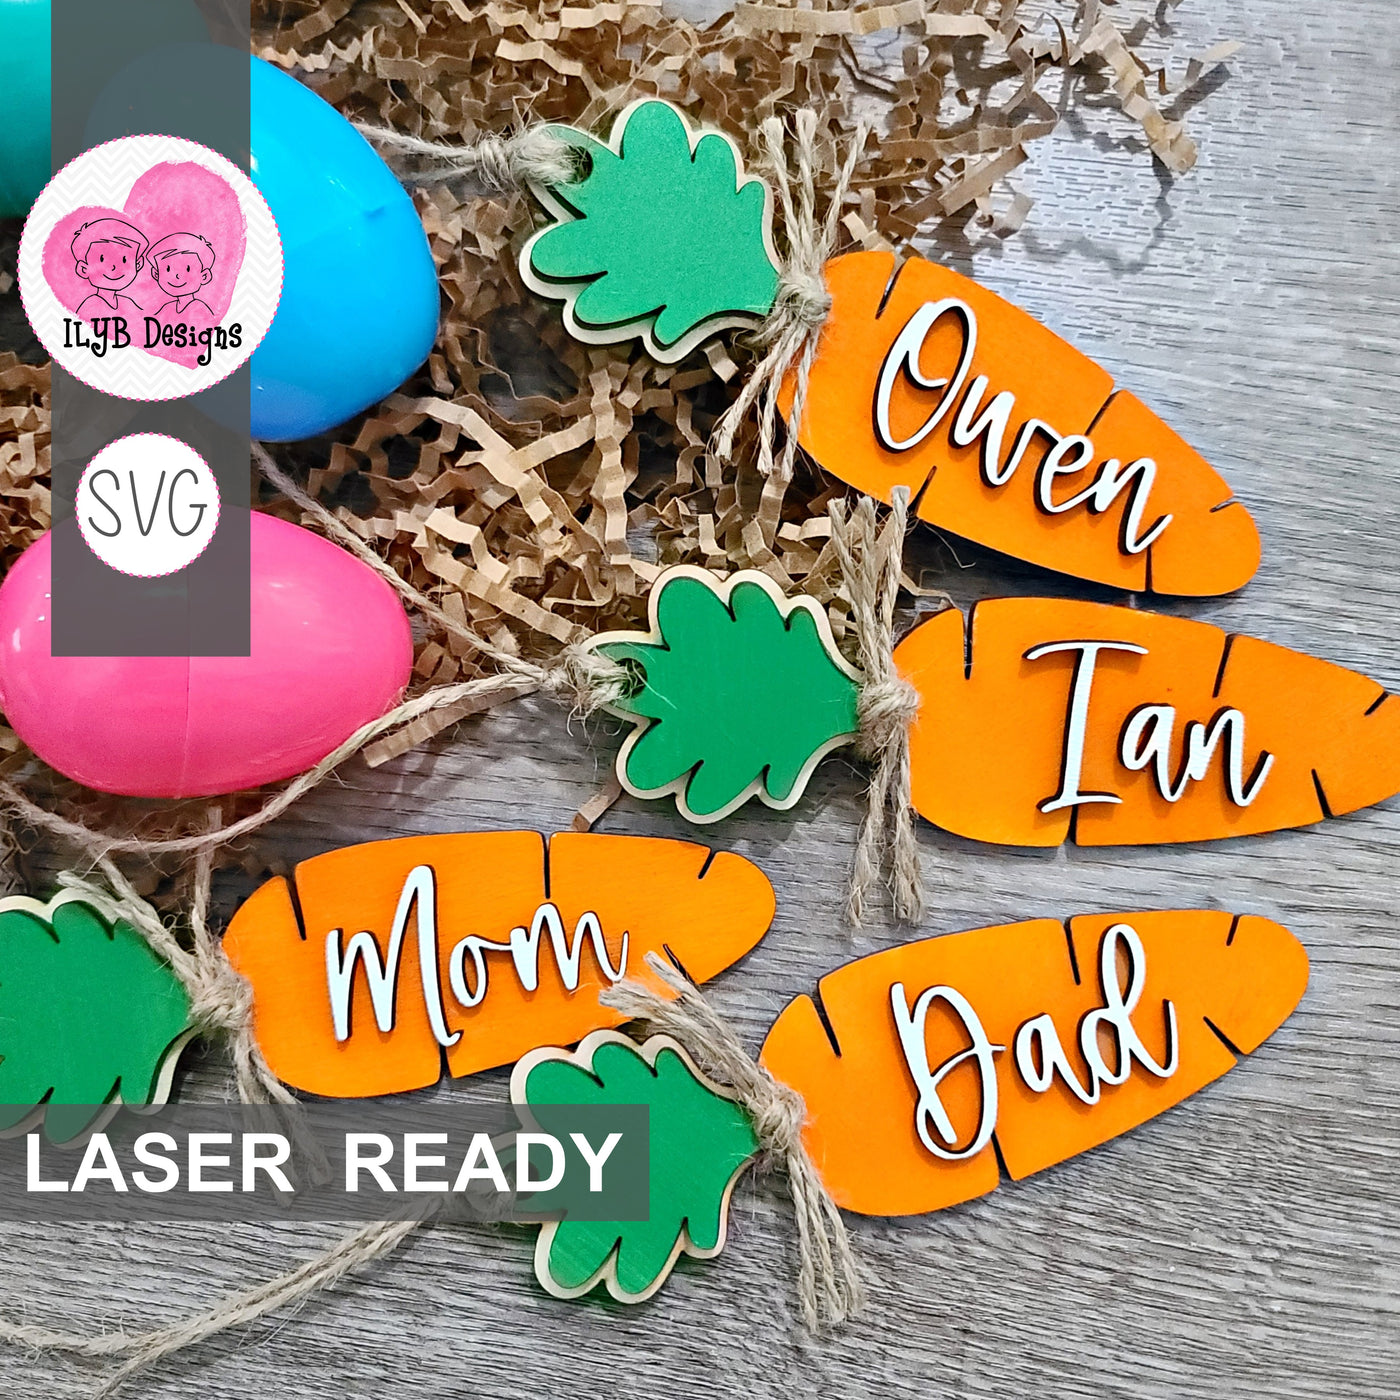 Carrot Easter Basket Tag | Laser Cut SVG File